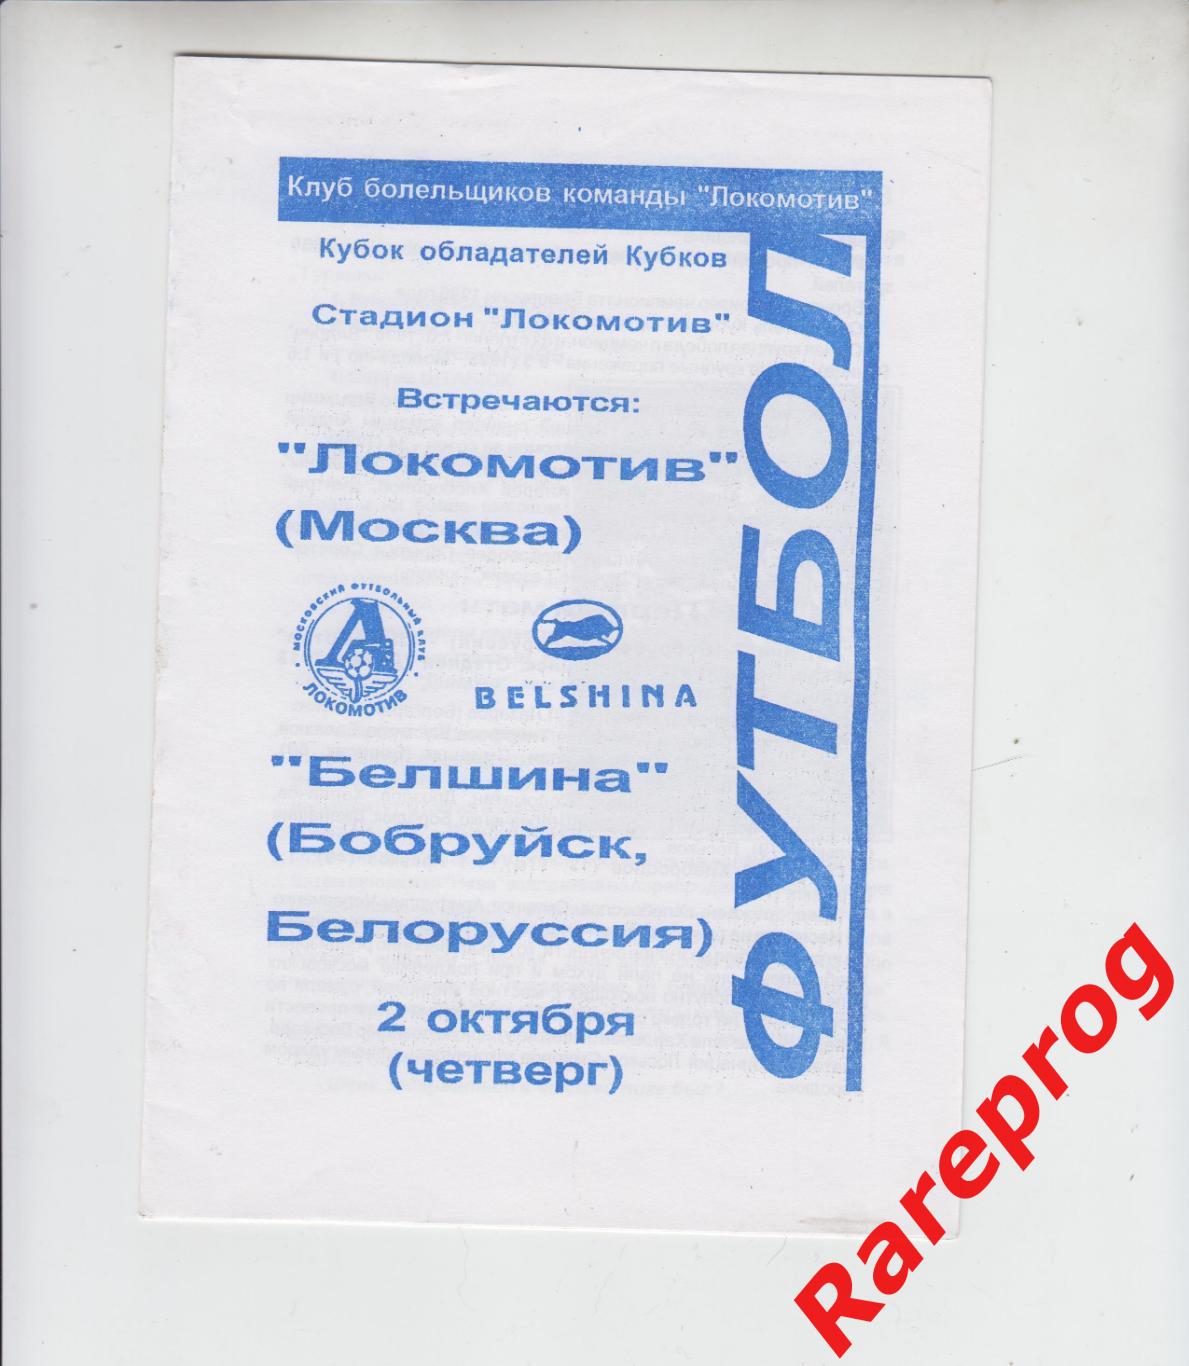 Локомотив Москва Россия - Белшина Беларусь - 1997 кубок Кубков УЕФА